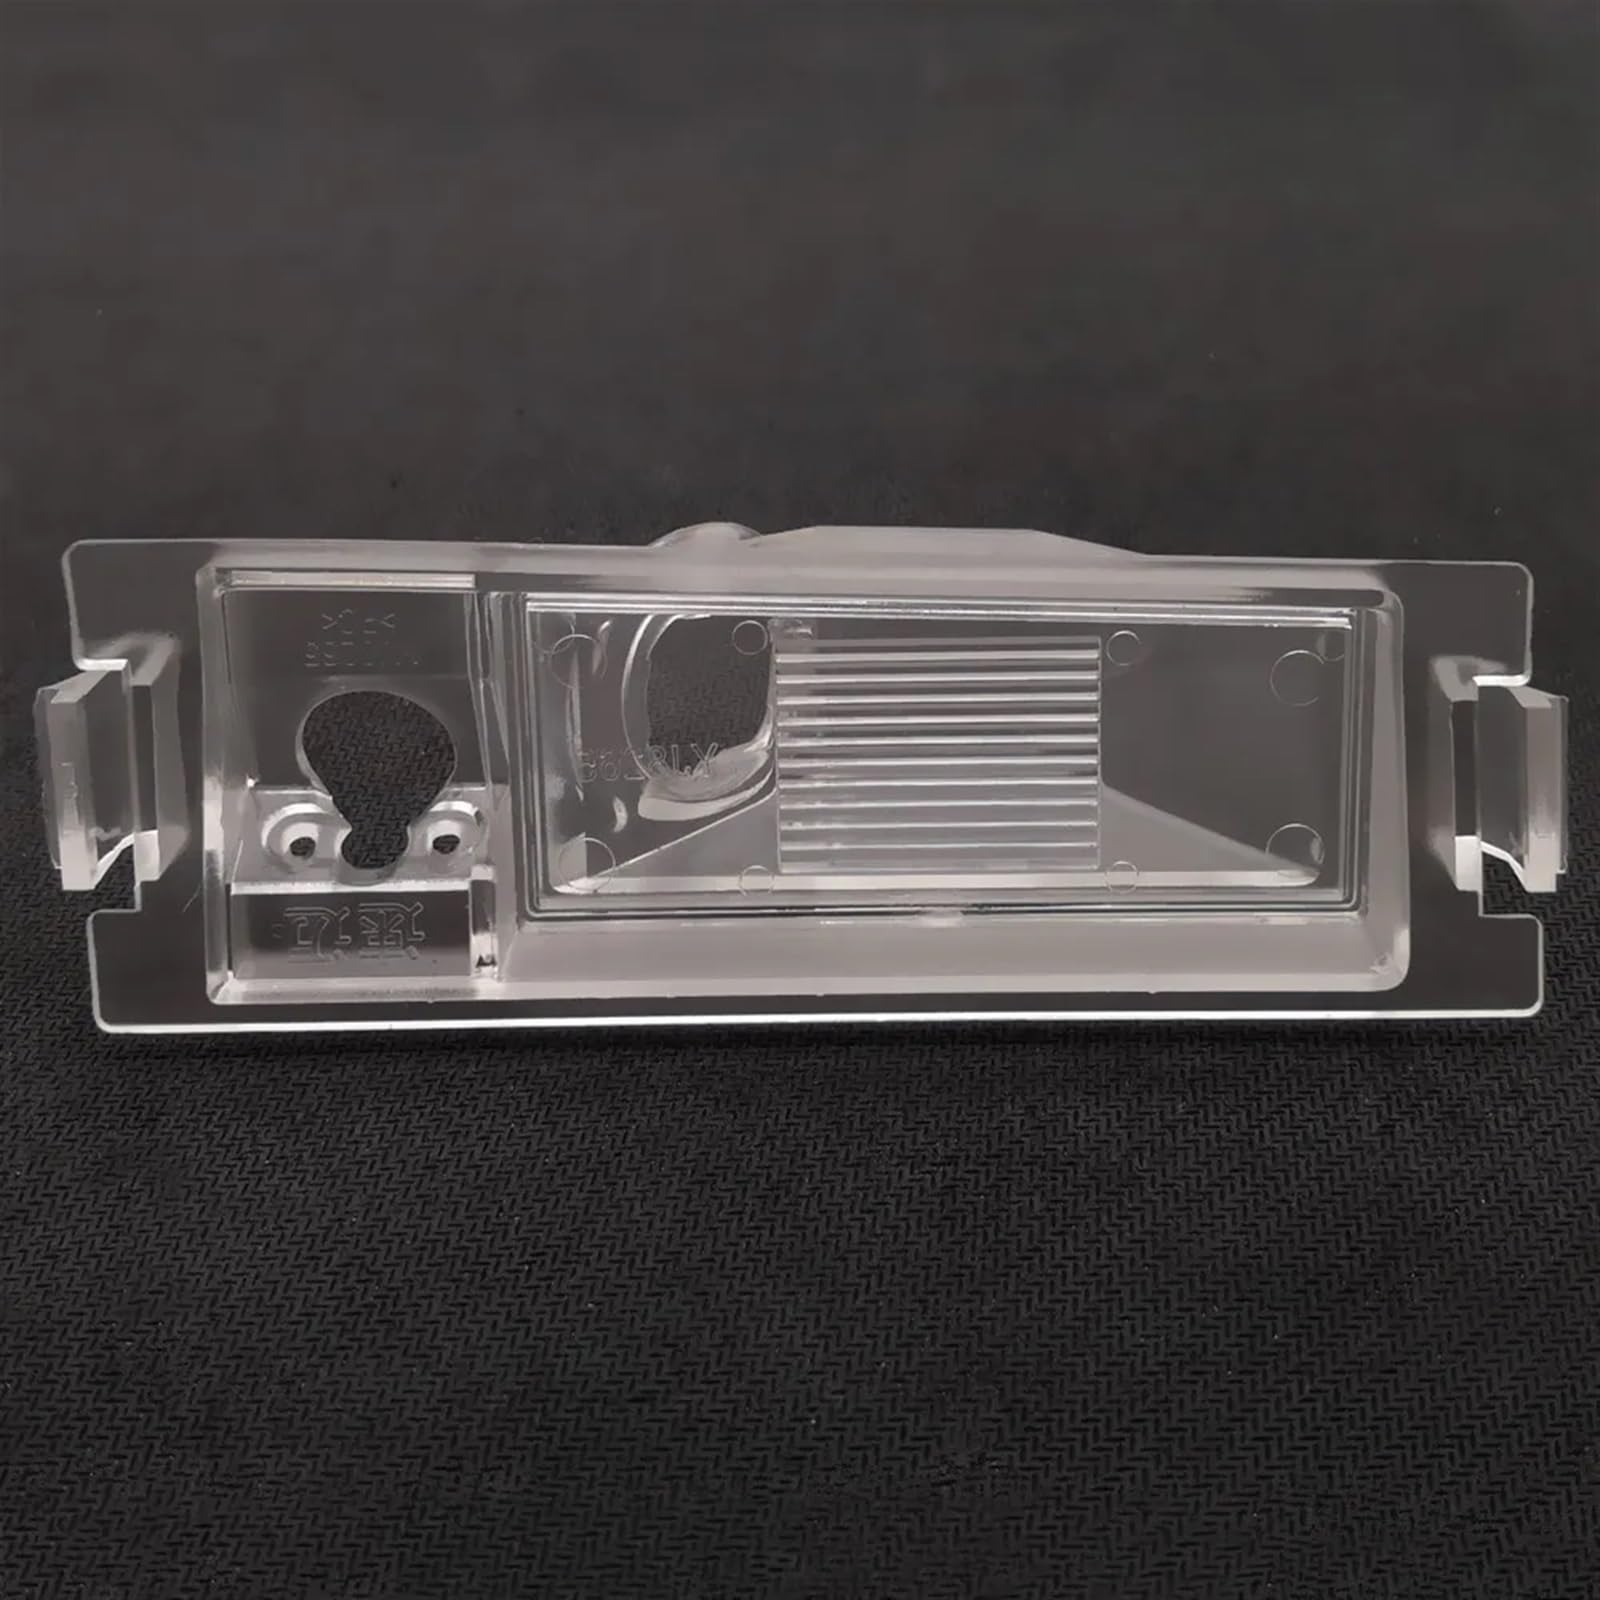 HANZOU Auto Rückansicht Backup-Kamera Halterung Kennzeichen Licht Fit for Kia Shuma Forte Cerato Pro Ceed GT Koup Coupe 2009-2019 Kamerahalterung für die Sicherung im Auto (Size : 1 Piece)